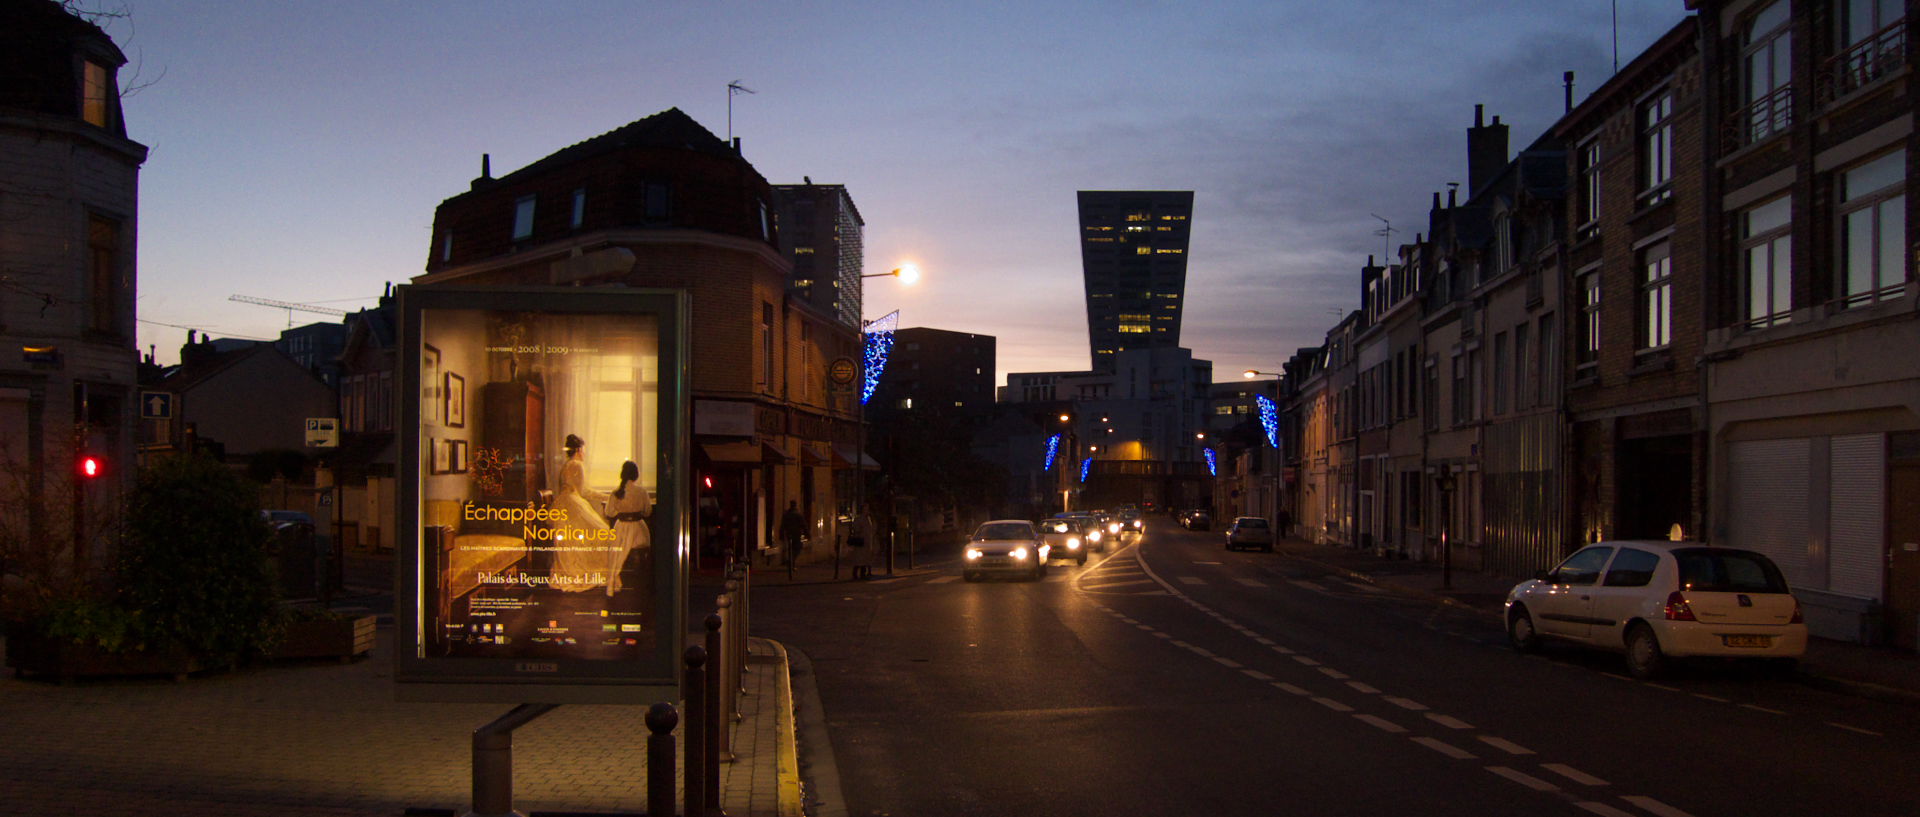 Vendredi 19 décembre 2008 (2), rue du Faubourg de Roubaix, à Lille.